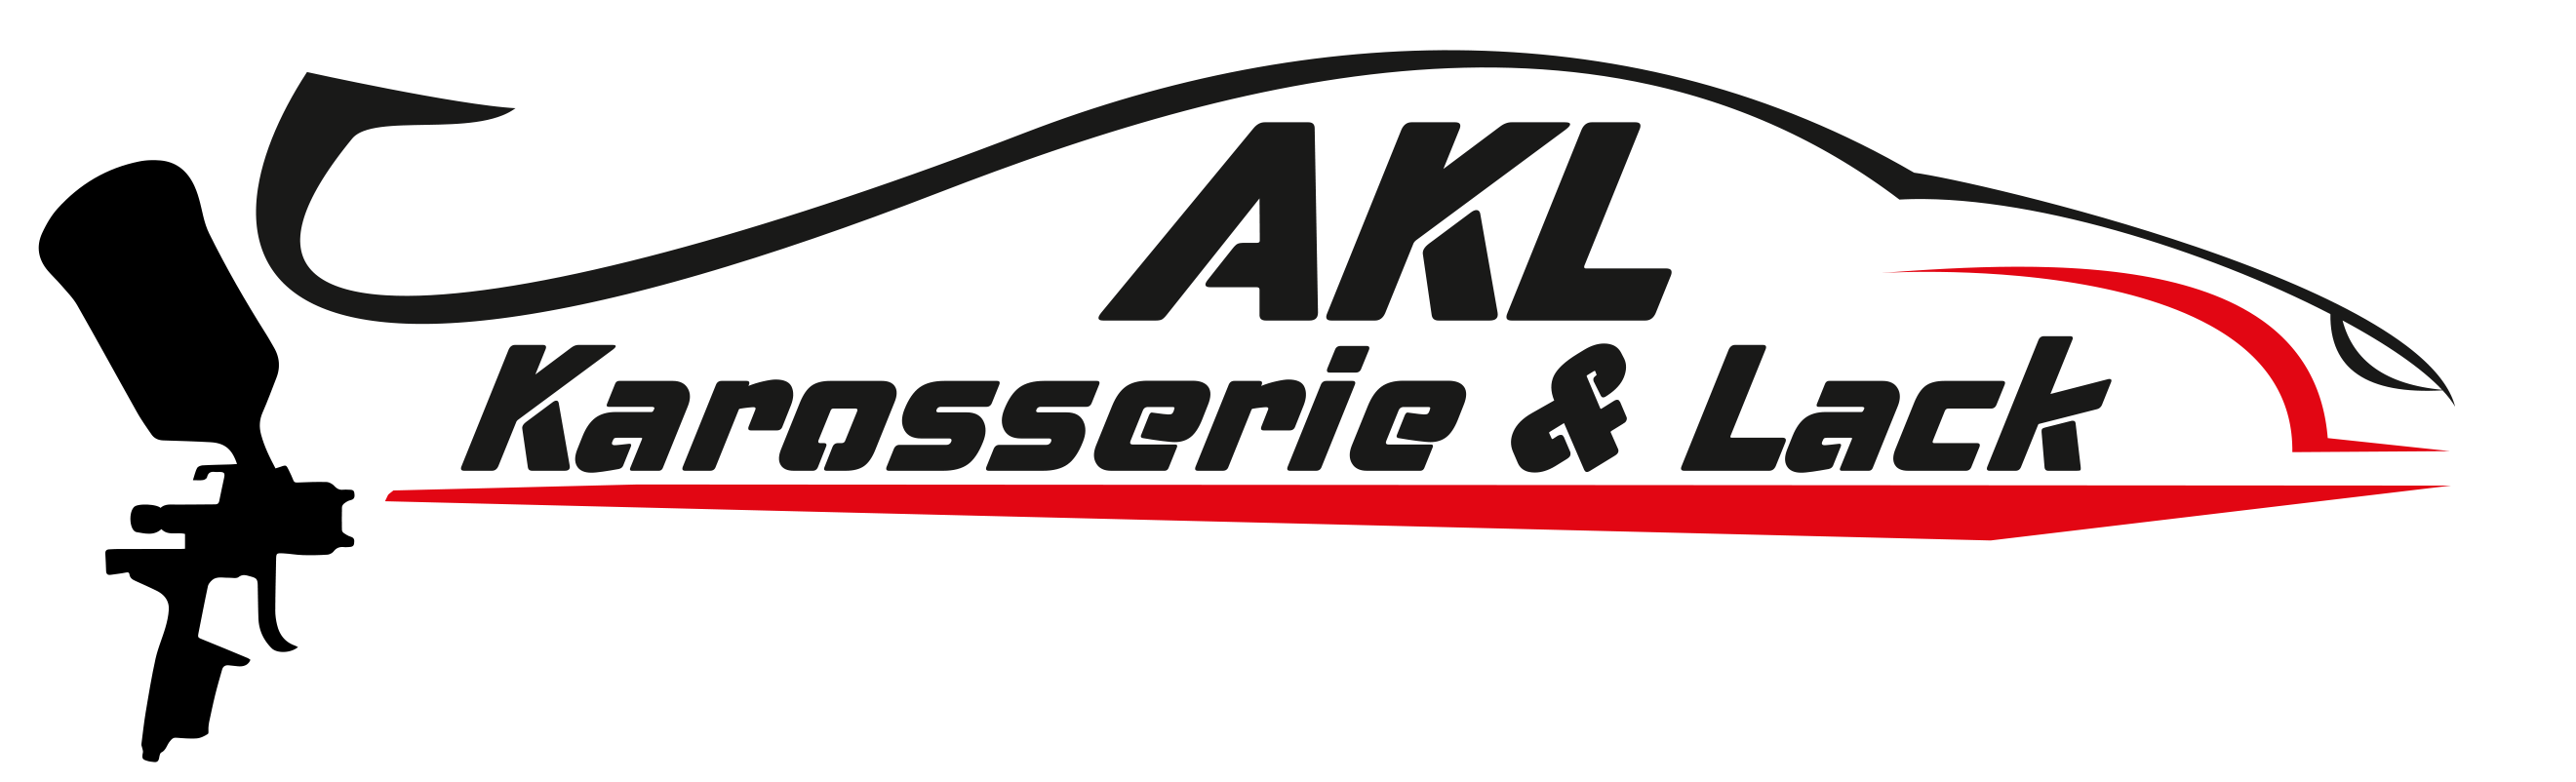 AKL Karosserie & Lack